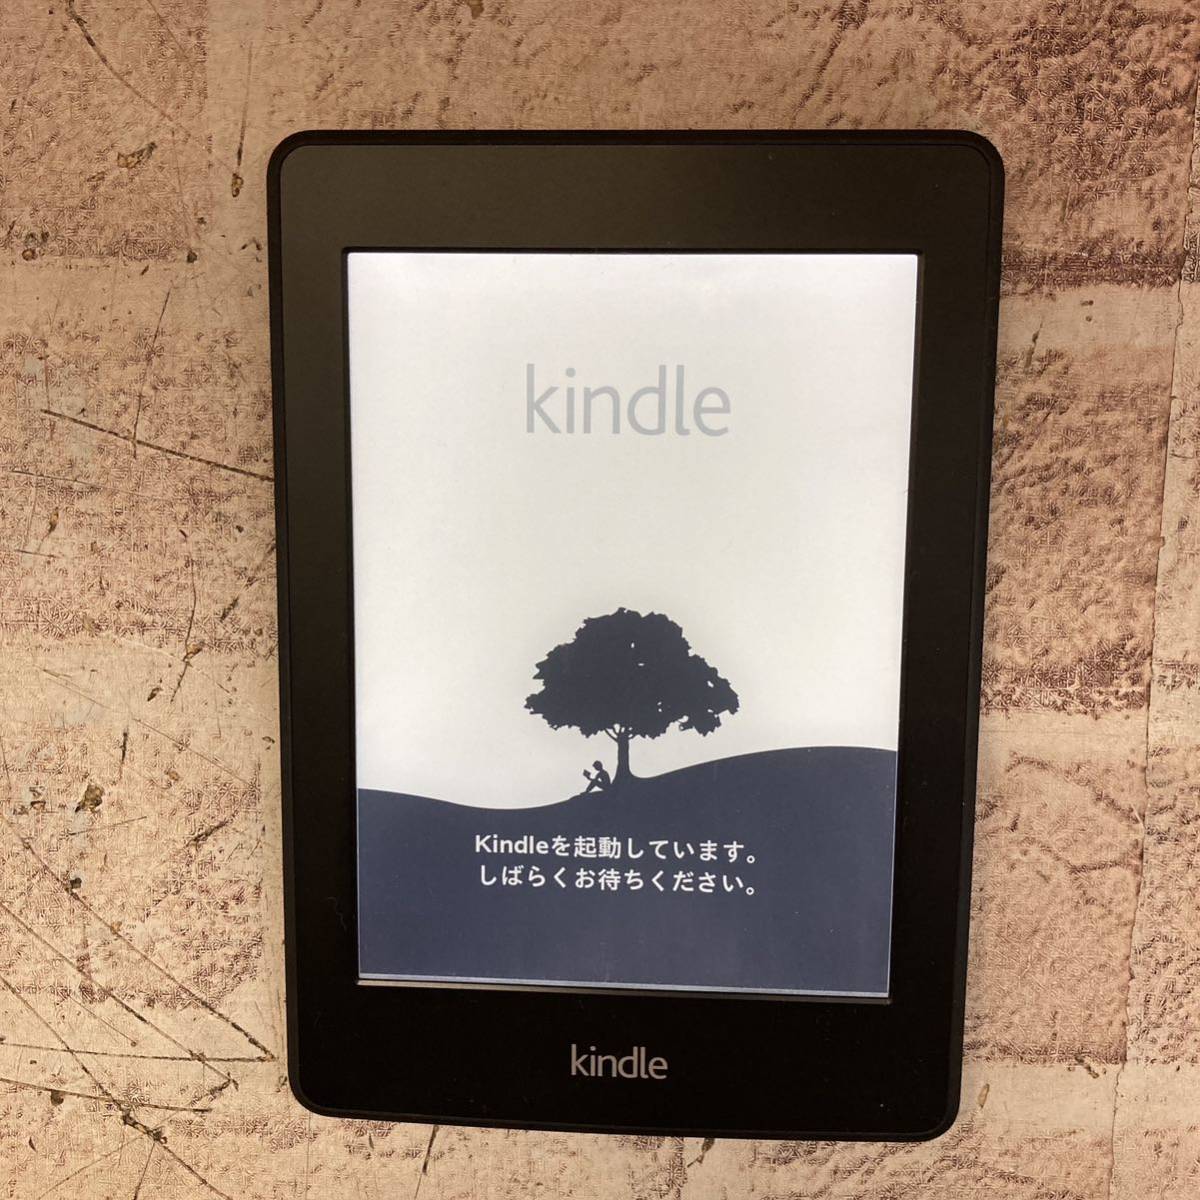 [5-697]Amazon Amazon Kindle Paperwhite gold доллар бумага Wi-Fi модель DP75SDI электронная книга корпус только [ единая стоимость доставки 297 иен ]